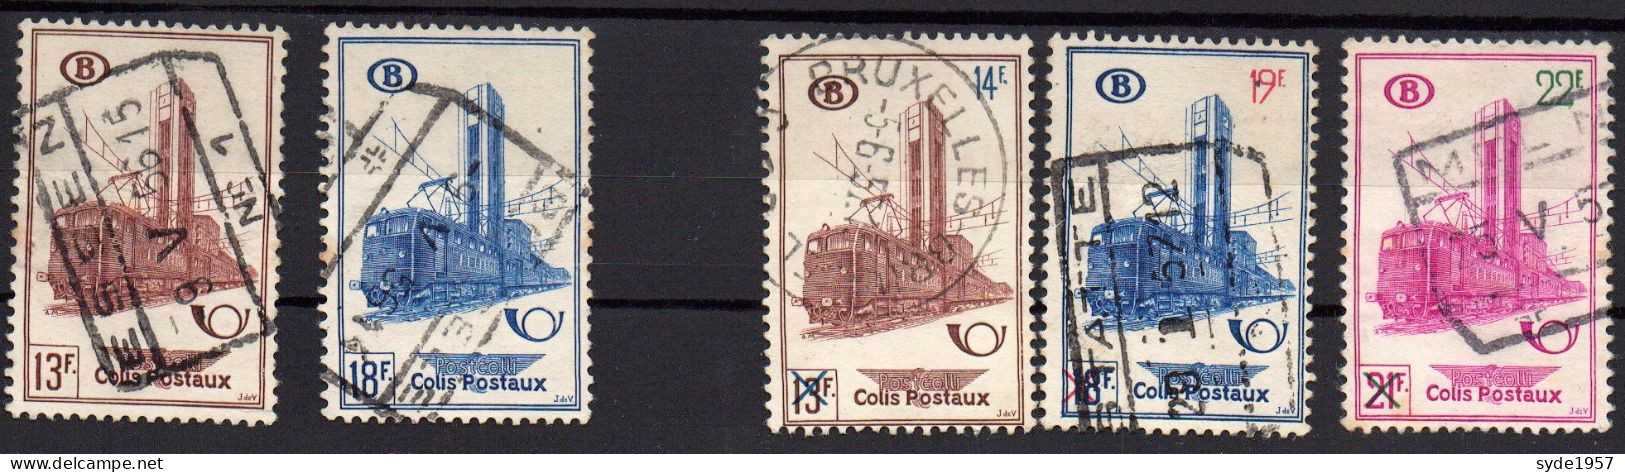 Belgique Chemin De Fer 1954-1956 COB CF355, 356, 358, 359, 360,  5 Timbres Oblitérés, - Usati